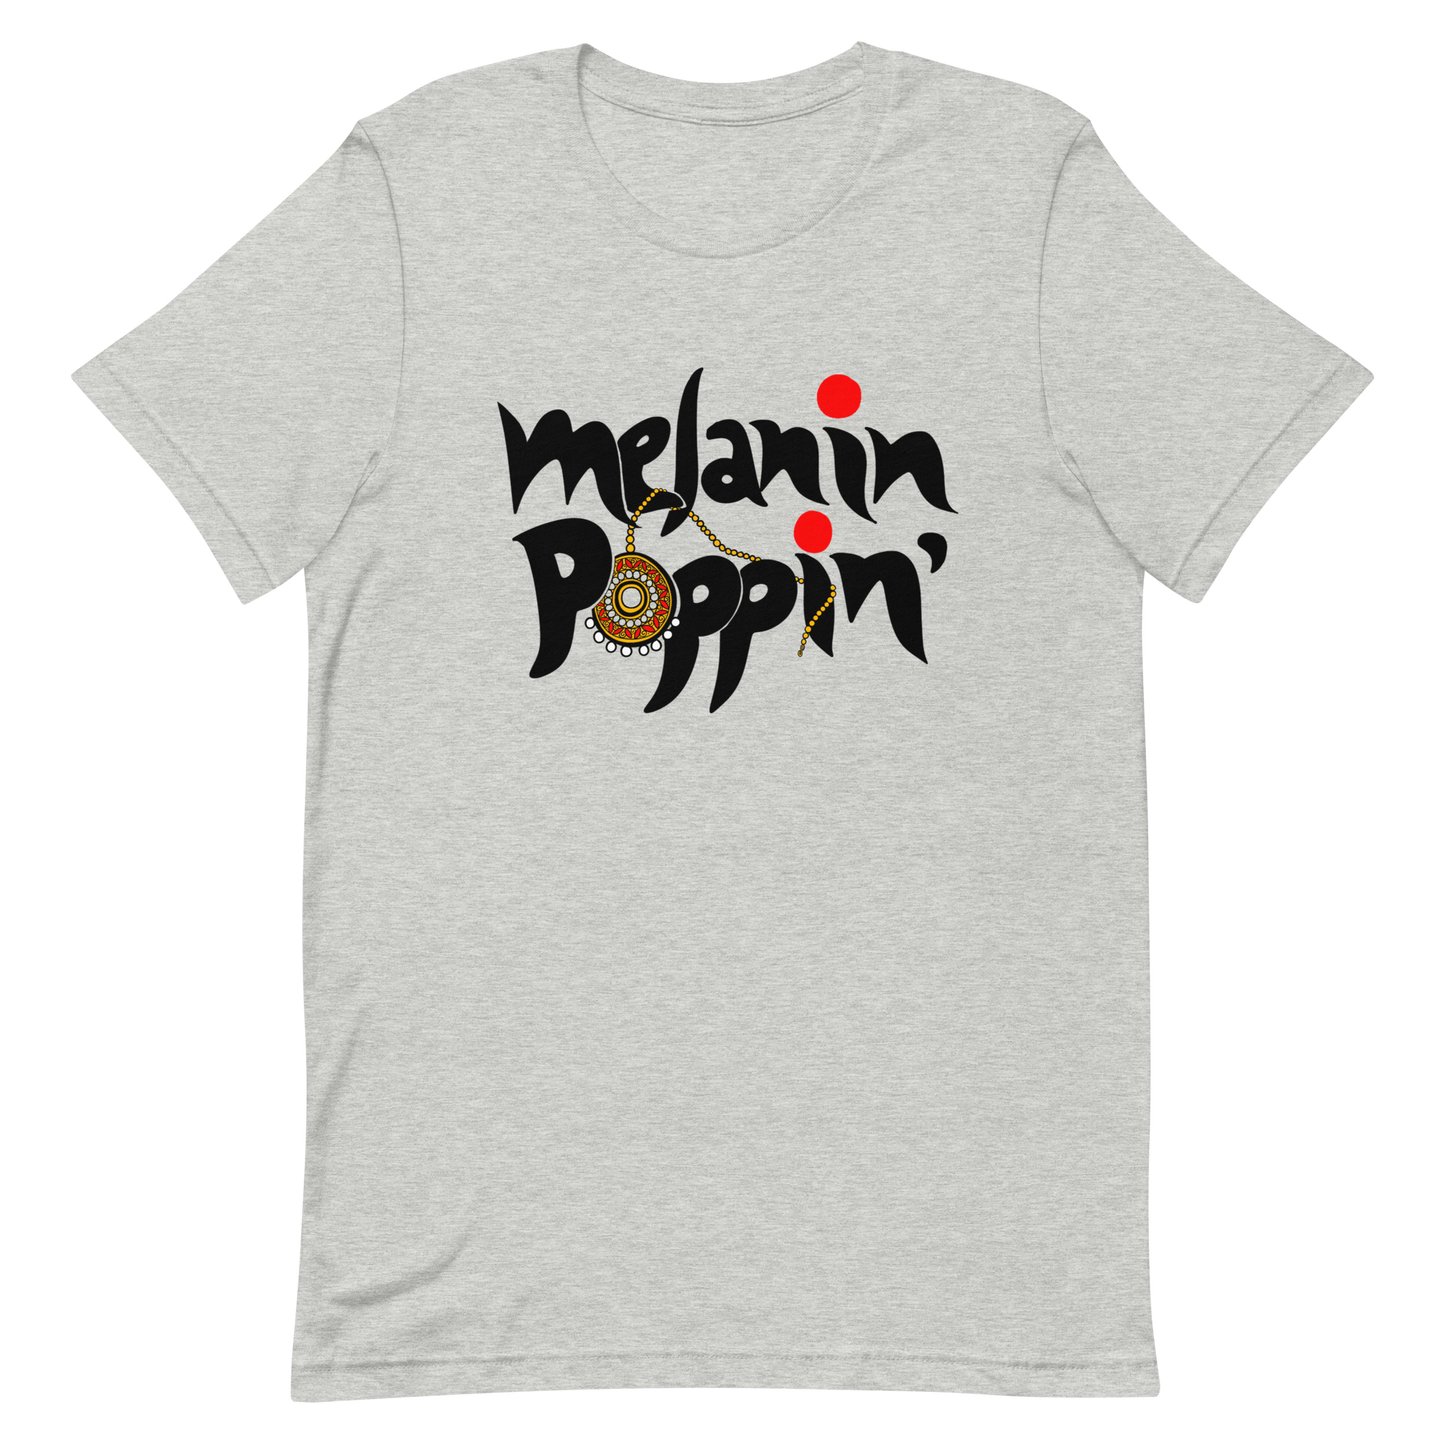 Melanin Poppin' - Short-Sleeve Unisex T-Shirt